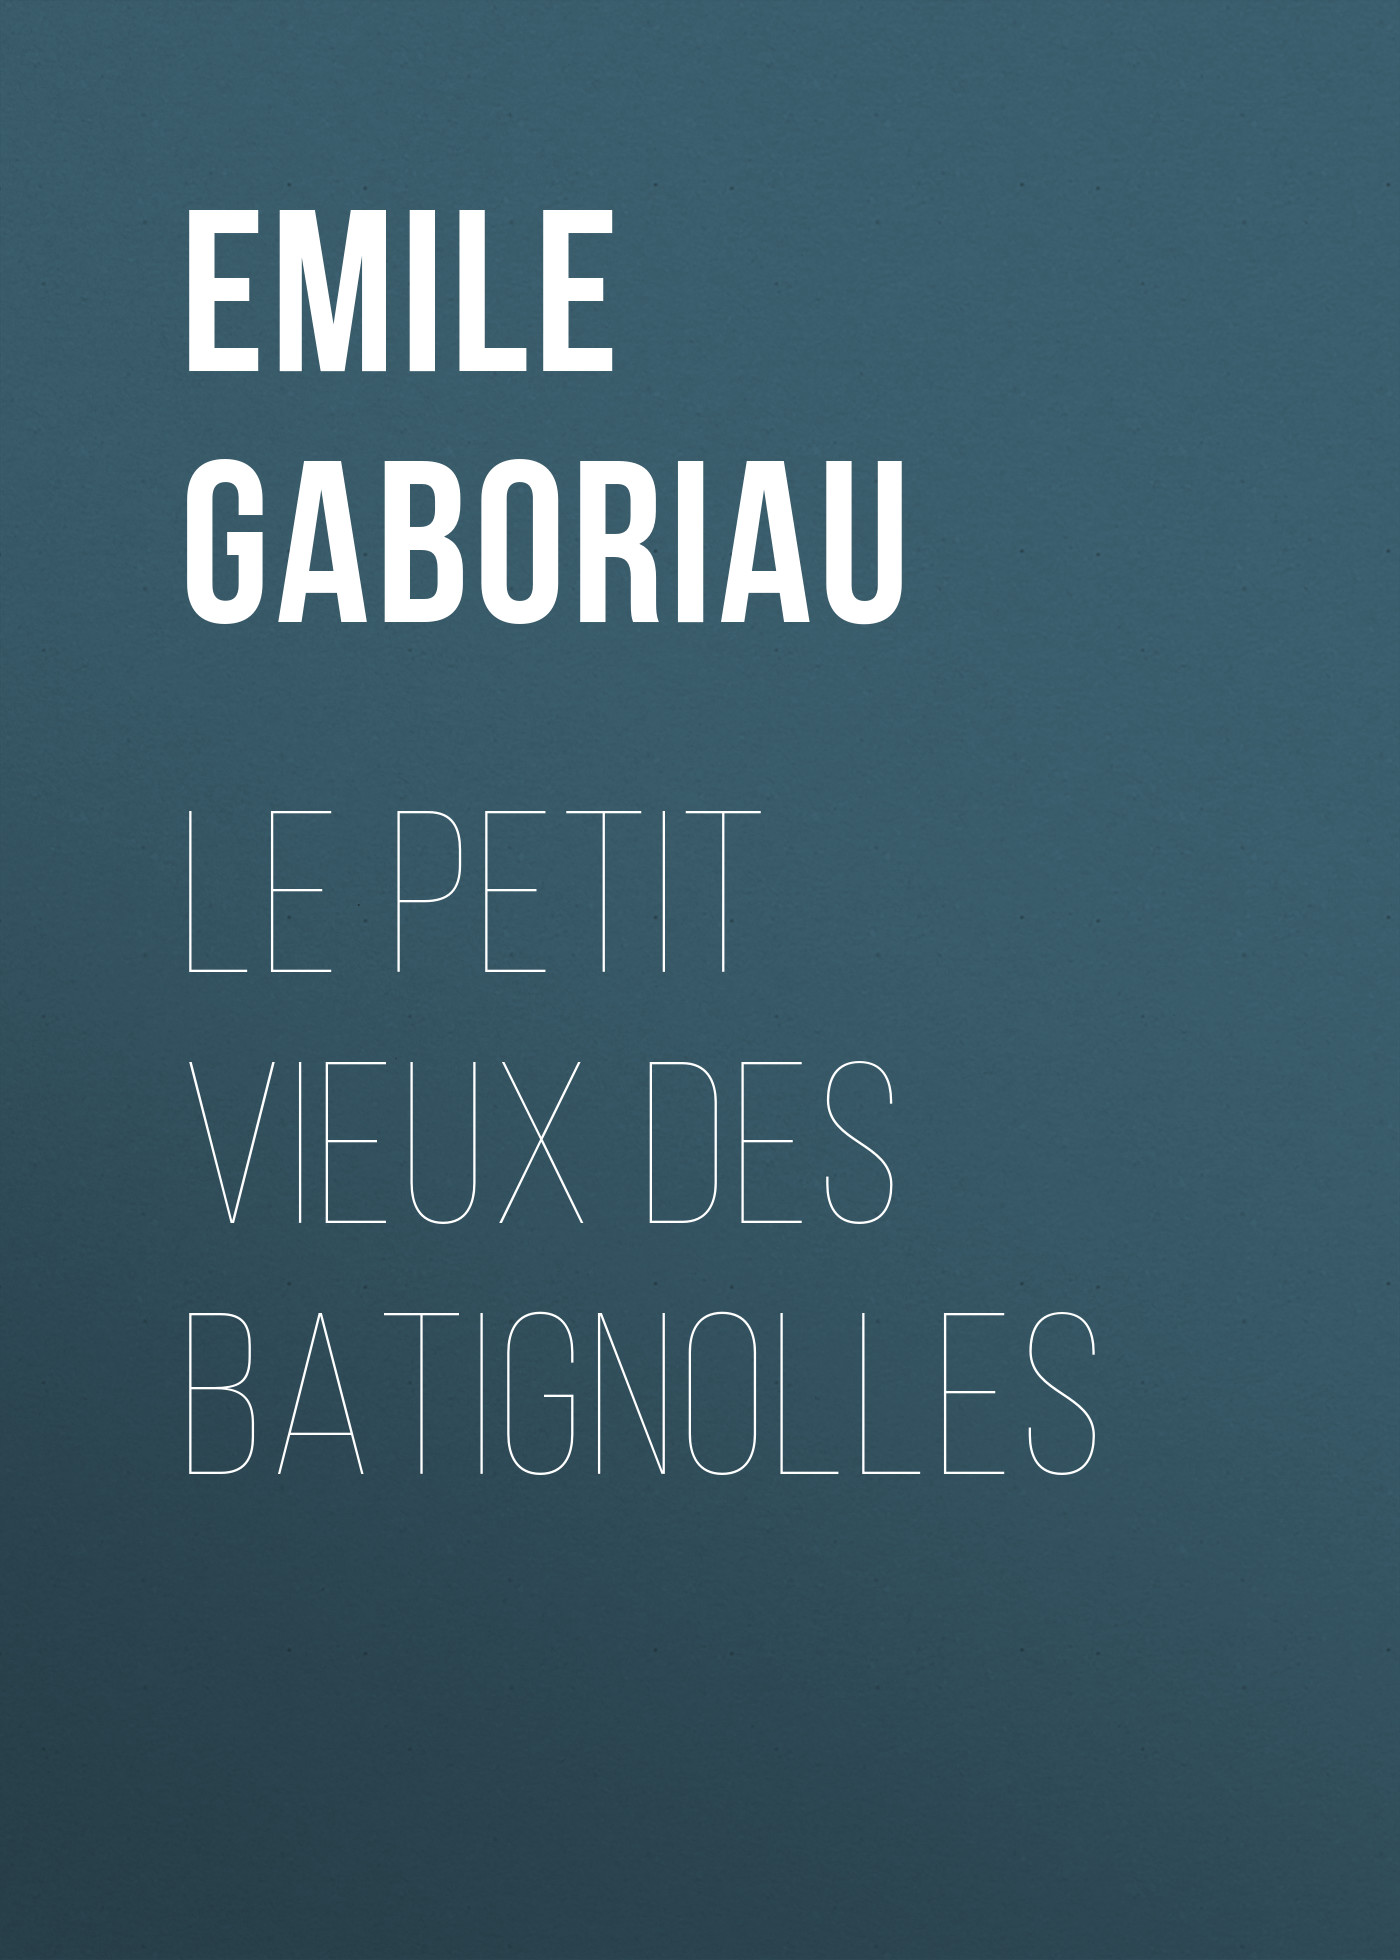 Книга Le petit vieux des Batignolles из серии , созданная Emile Gaboriau, может относится к жанру Зарубежная старинная литература, Зарубежная классика. Стоимость электронной книги Le petit vieux des Batignolles с идентификатором 24858931 составляет 0 руб.